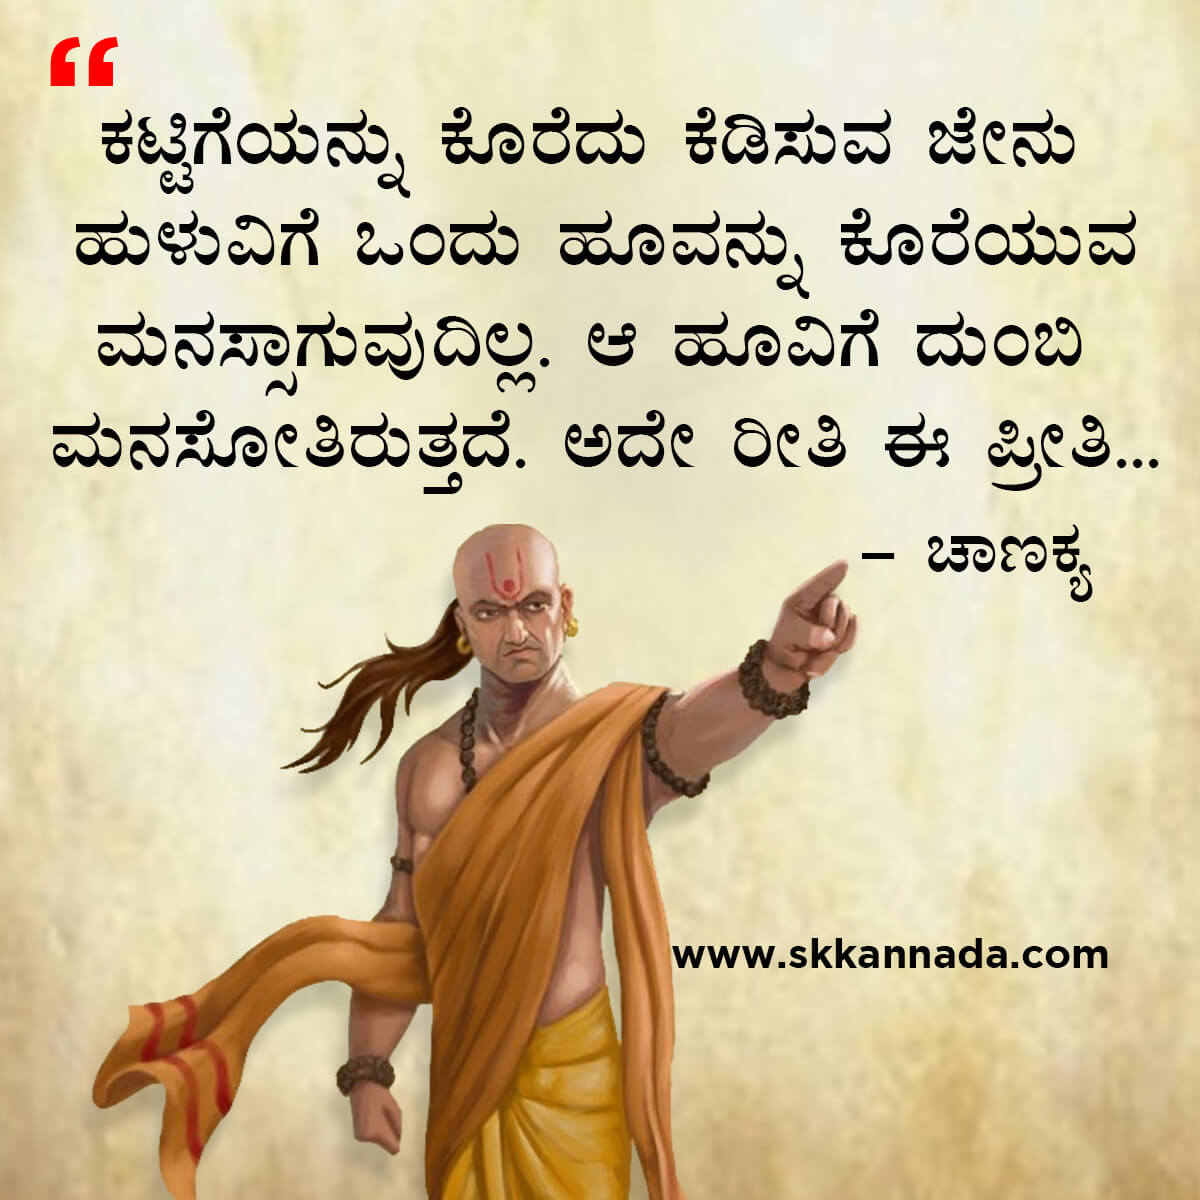 ಚಾಣಕ್ಯ ನೀತಿಗಳು : Chanakya Niti in Kannada - ಚಾಣಕ್ಯ ತಂತ್ರಗಳು - ಚಾಣಕ್ಯ ಸೂತ್ರಗಳು - chanakya quotes in kannada